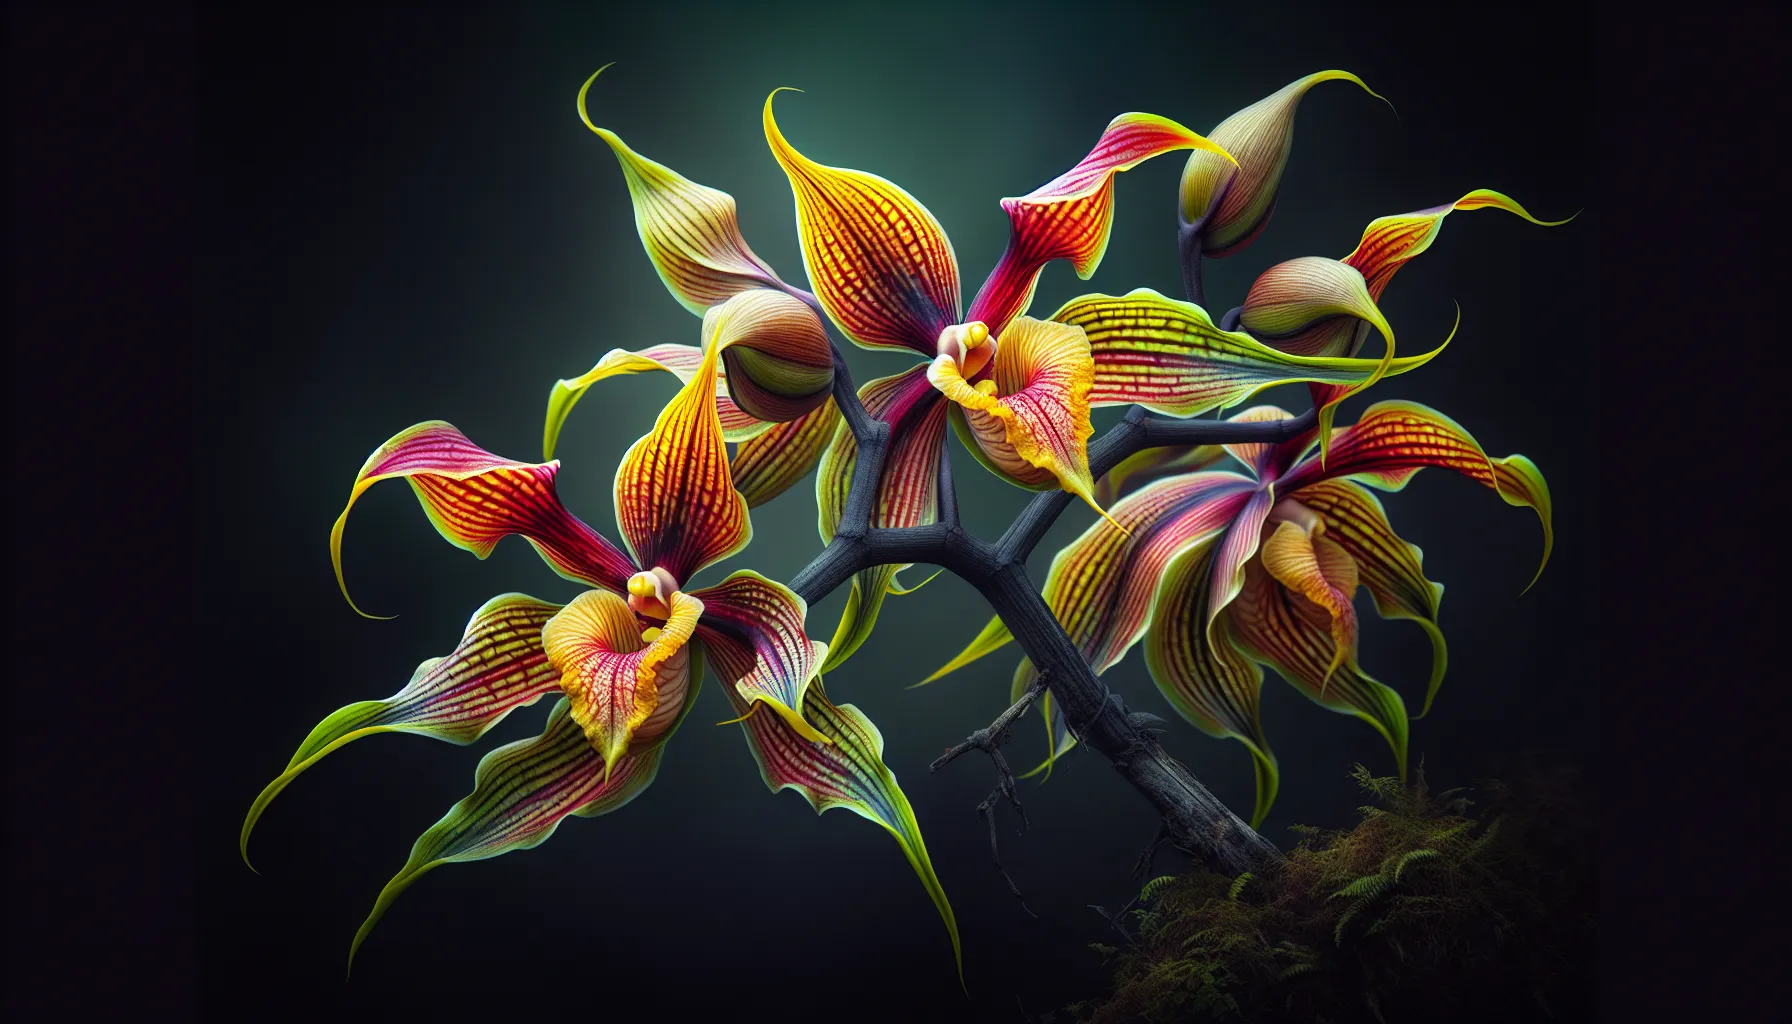 Imagen de una impresionante flor murciélago, conocida como la orquídea de enero, destacando sus brillantes colores y formas únicas.